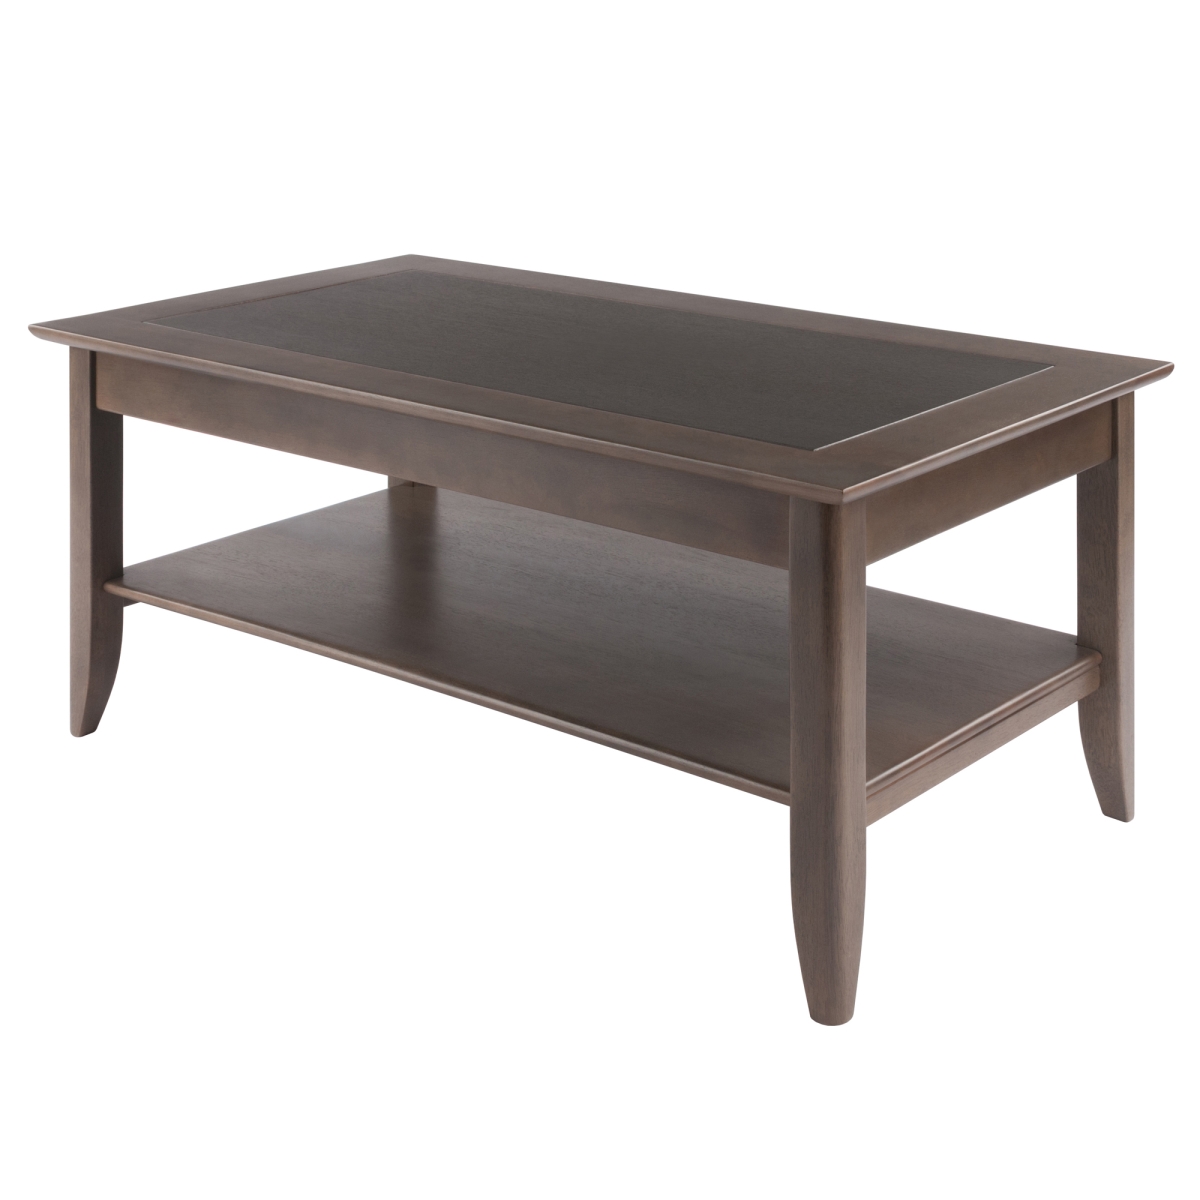 18 x 40 x 22.6 in. Santino Coffee Table, Oyster Gray -  Juki Furniture, JU3278847